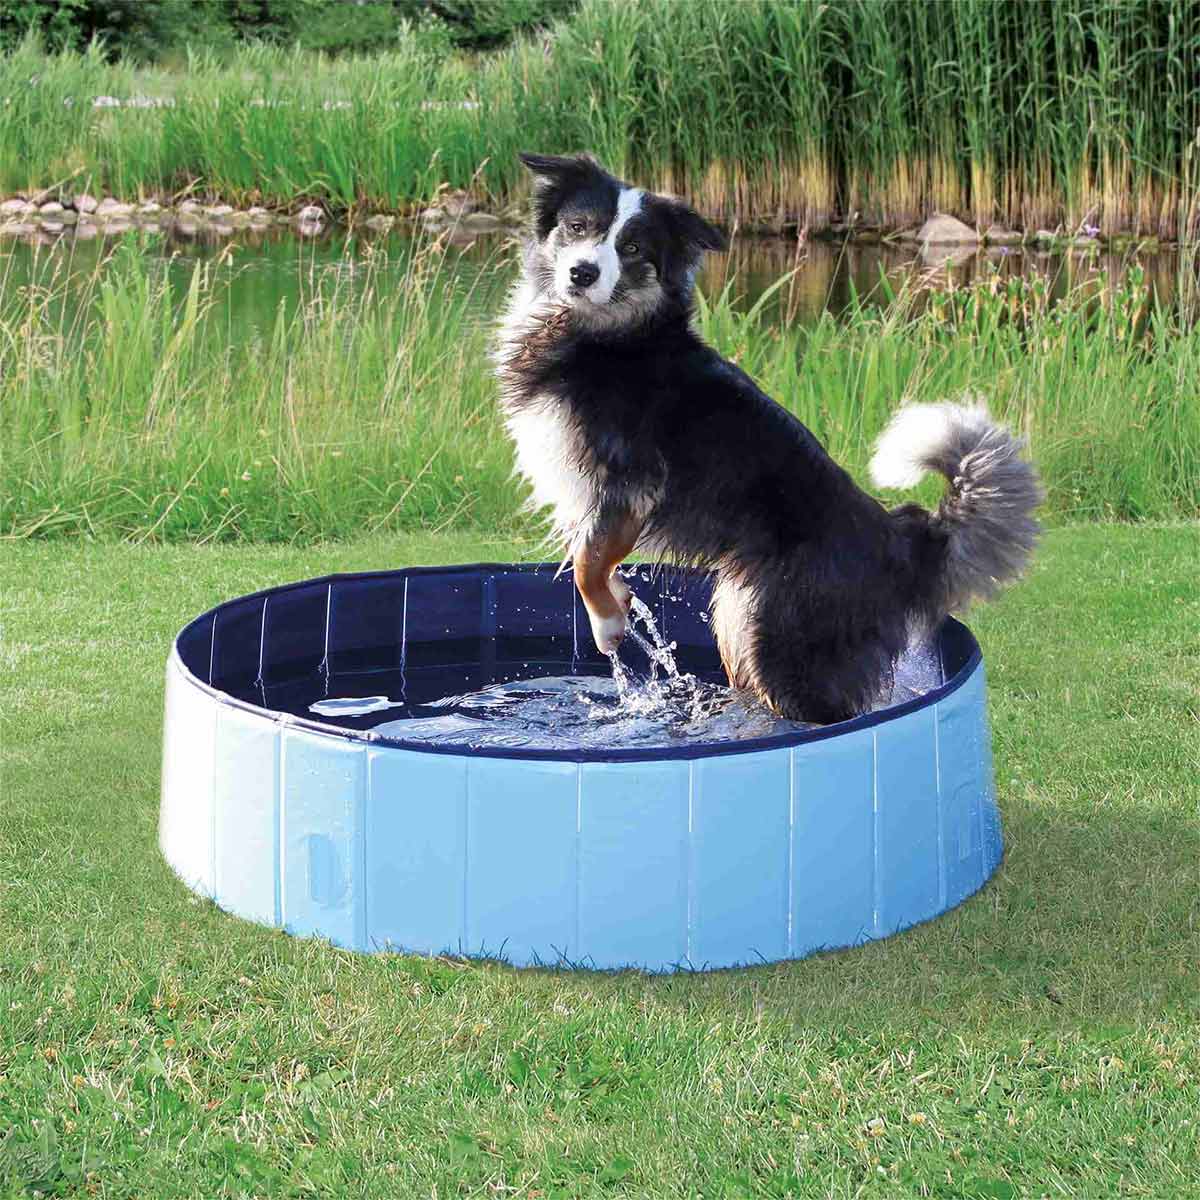 Trixie bazén pro psy, světle modrý